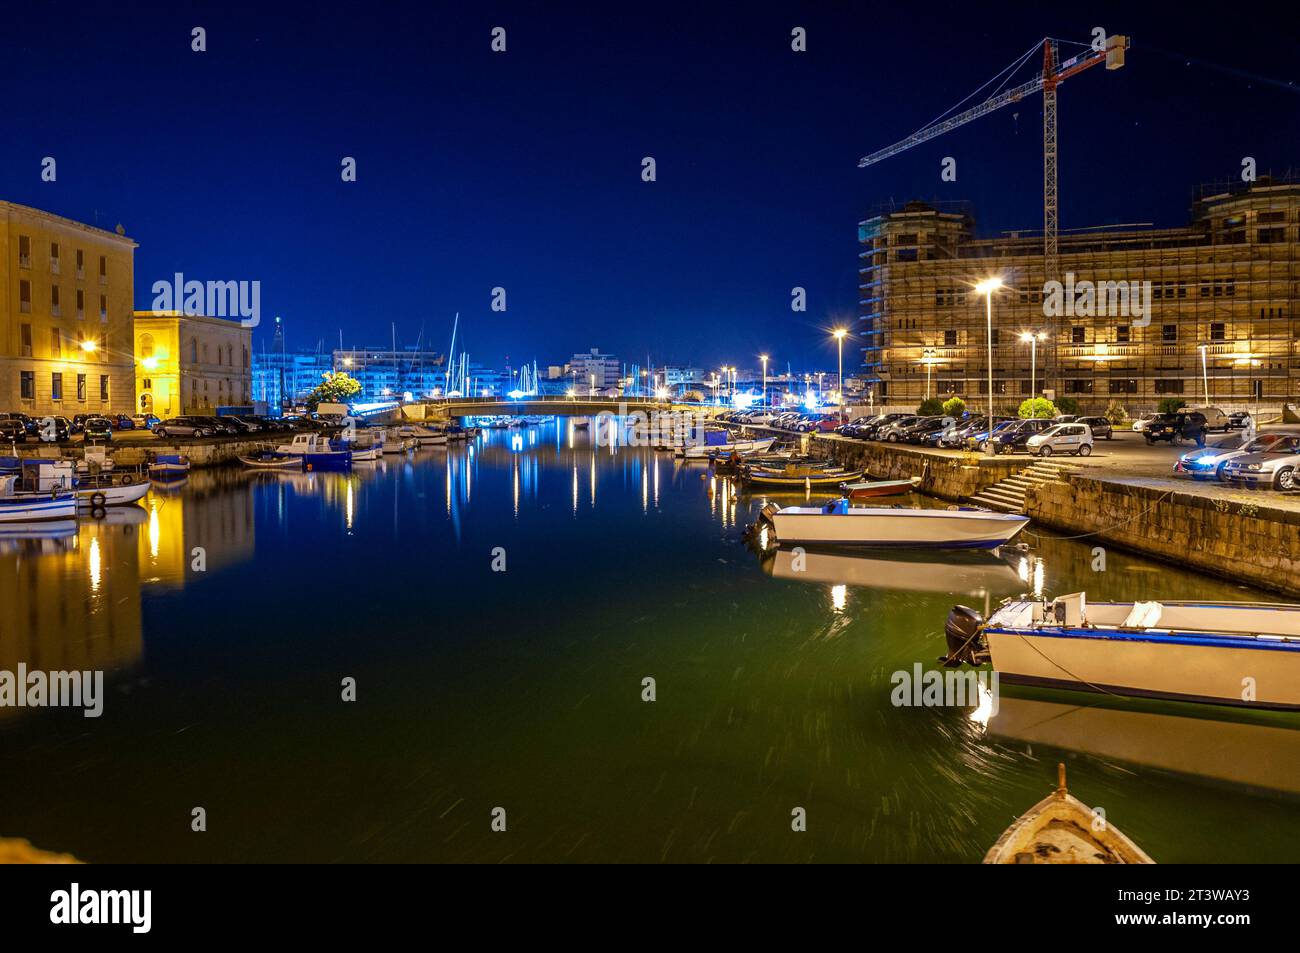 Vue nocturne sur le canal avec bateaux amarrés au quai Banque D'Images